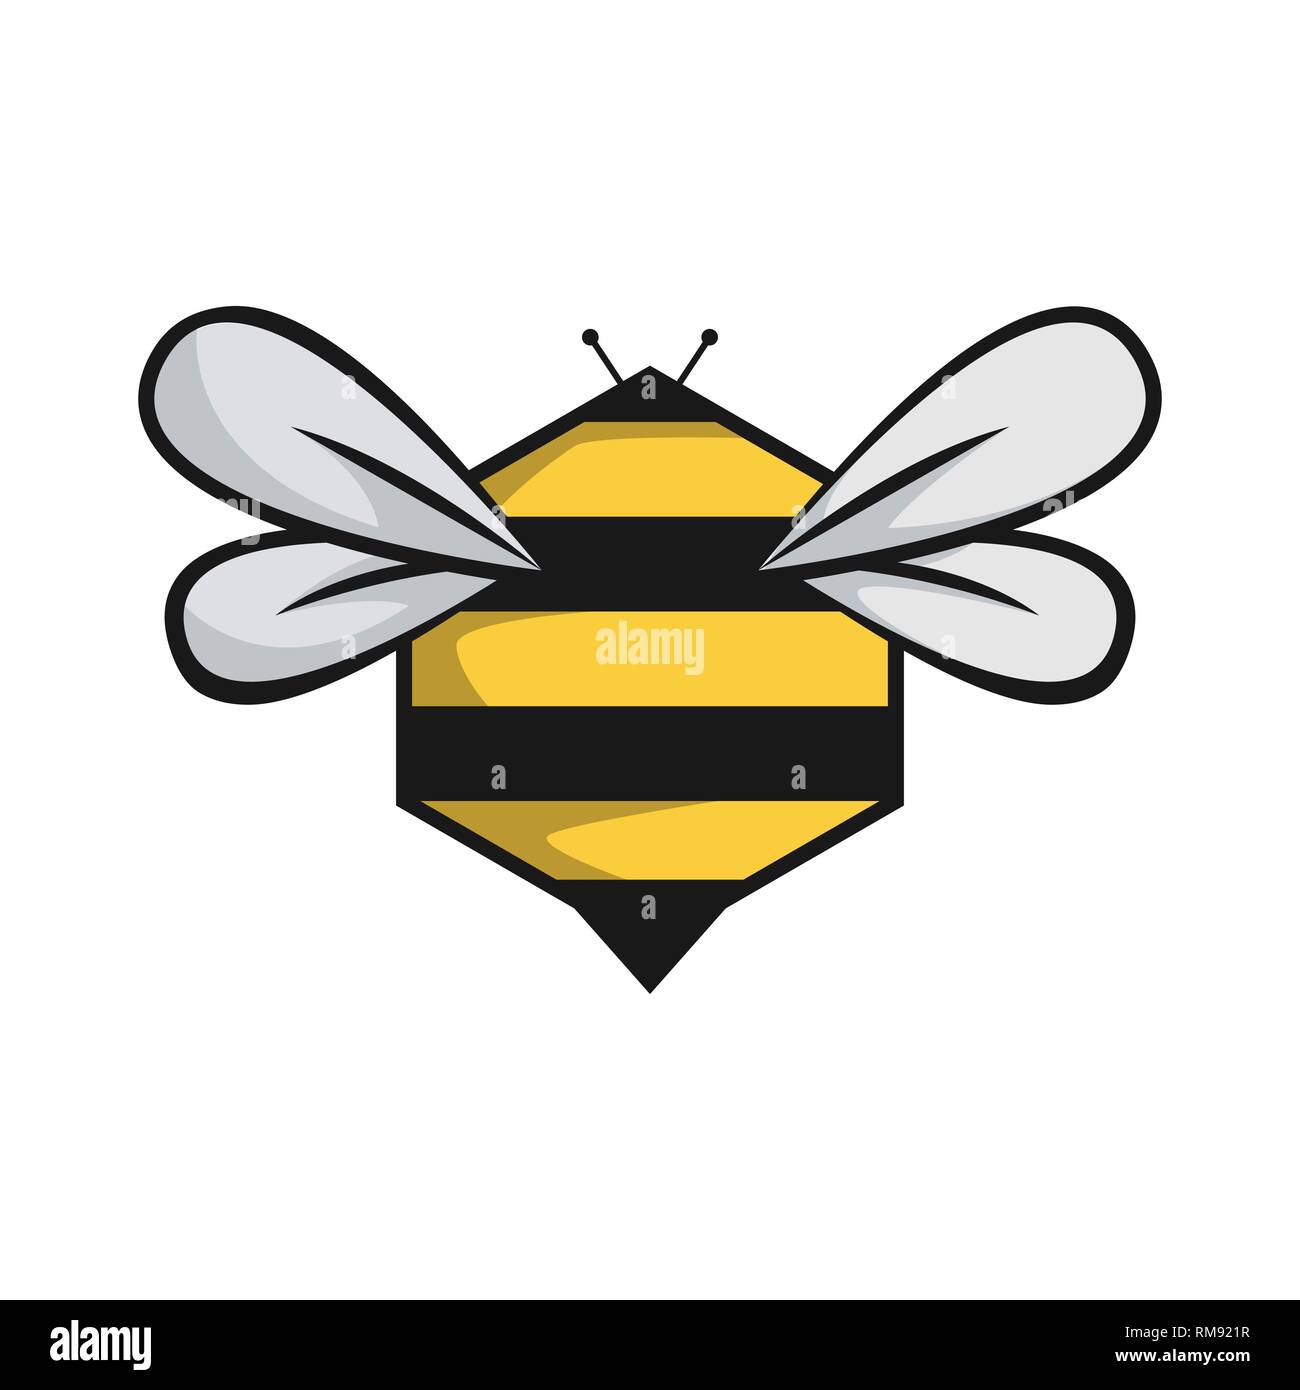 Vectores e ilustraciones de Panal miel abeja para descargar gratis